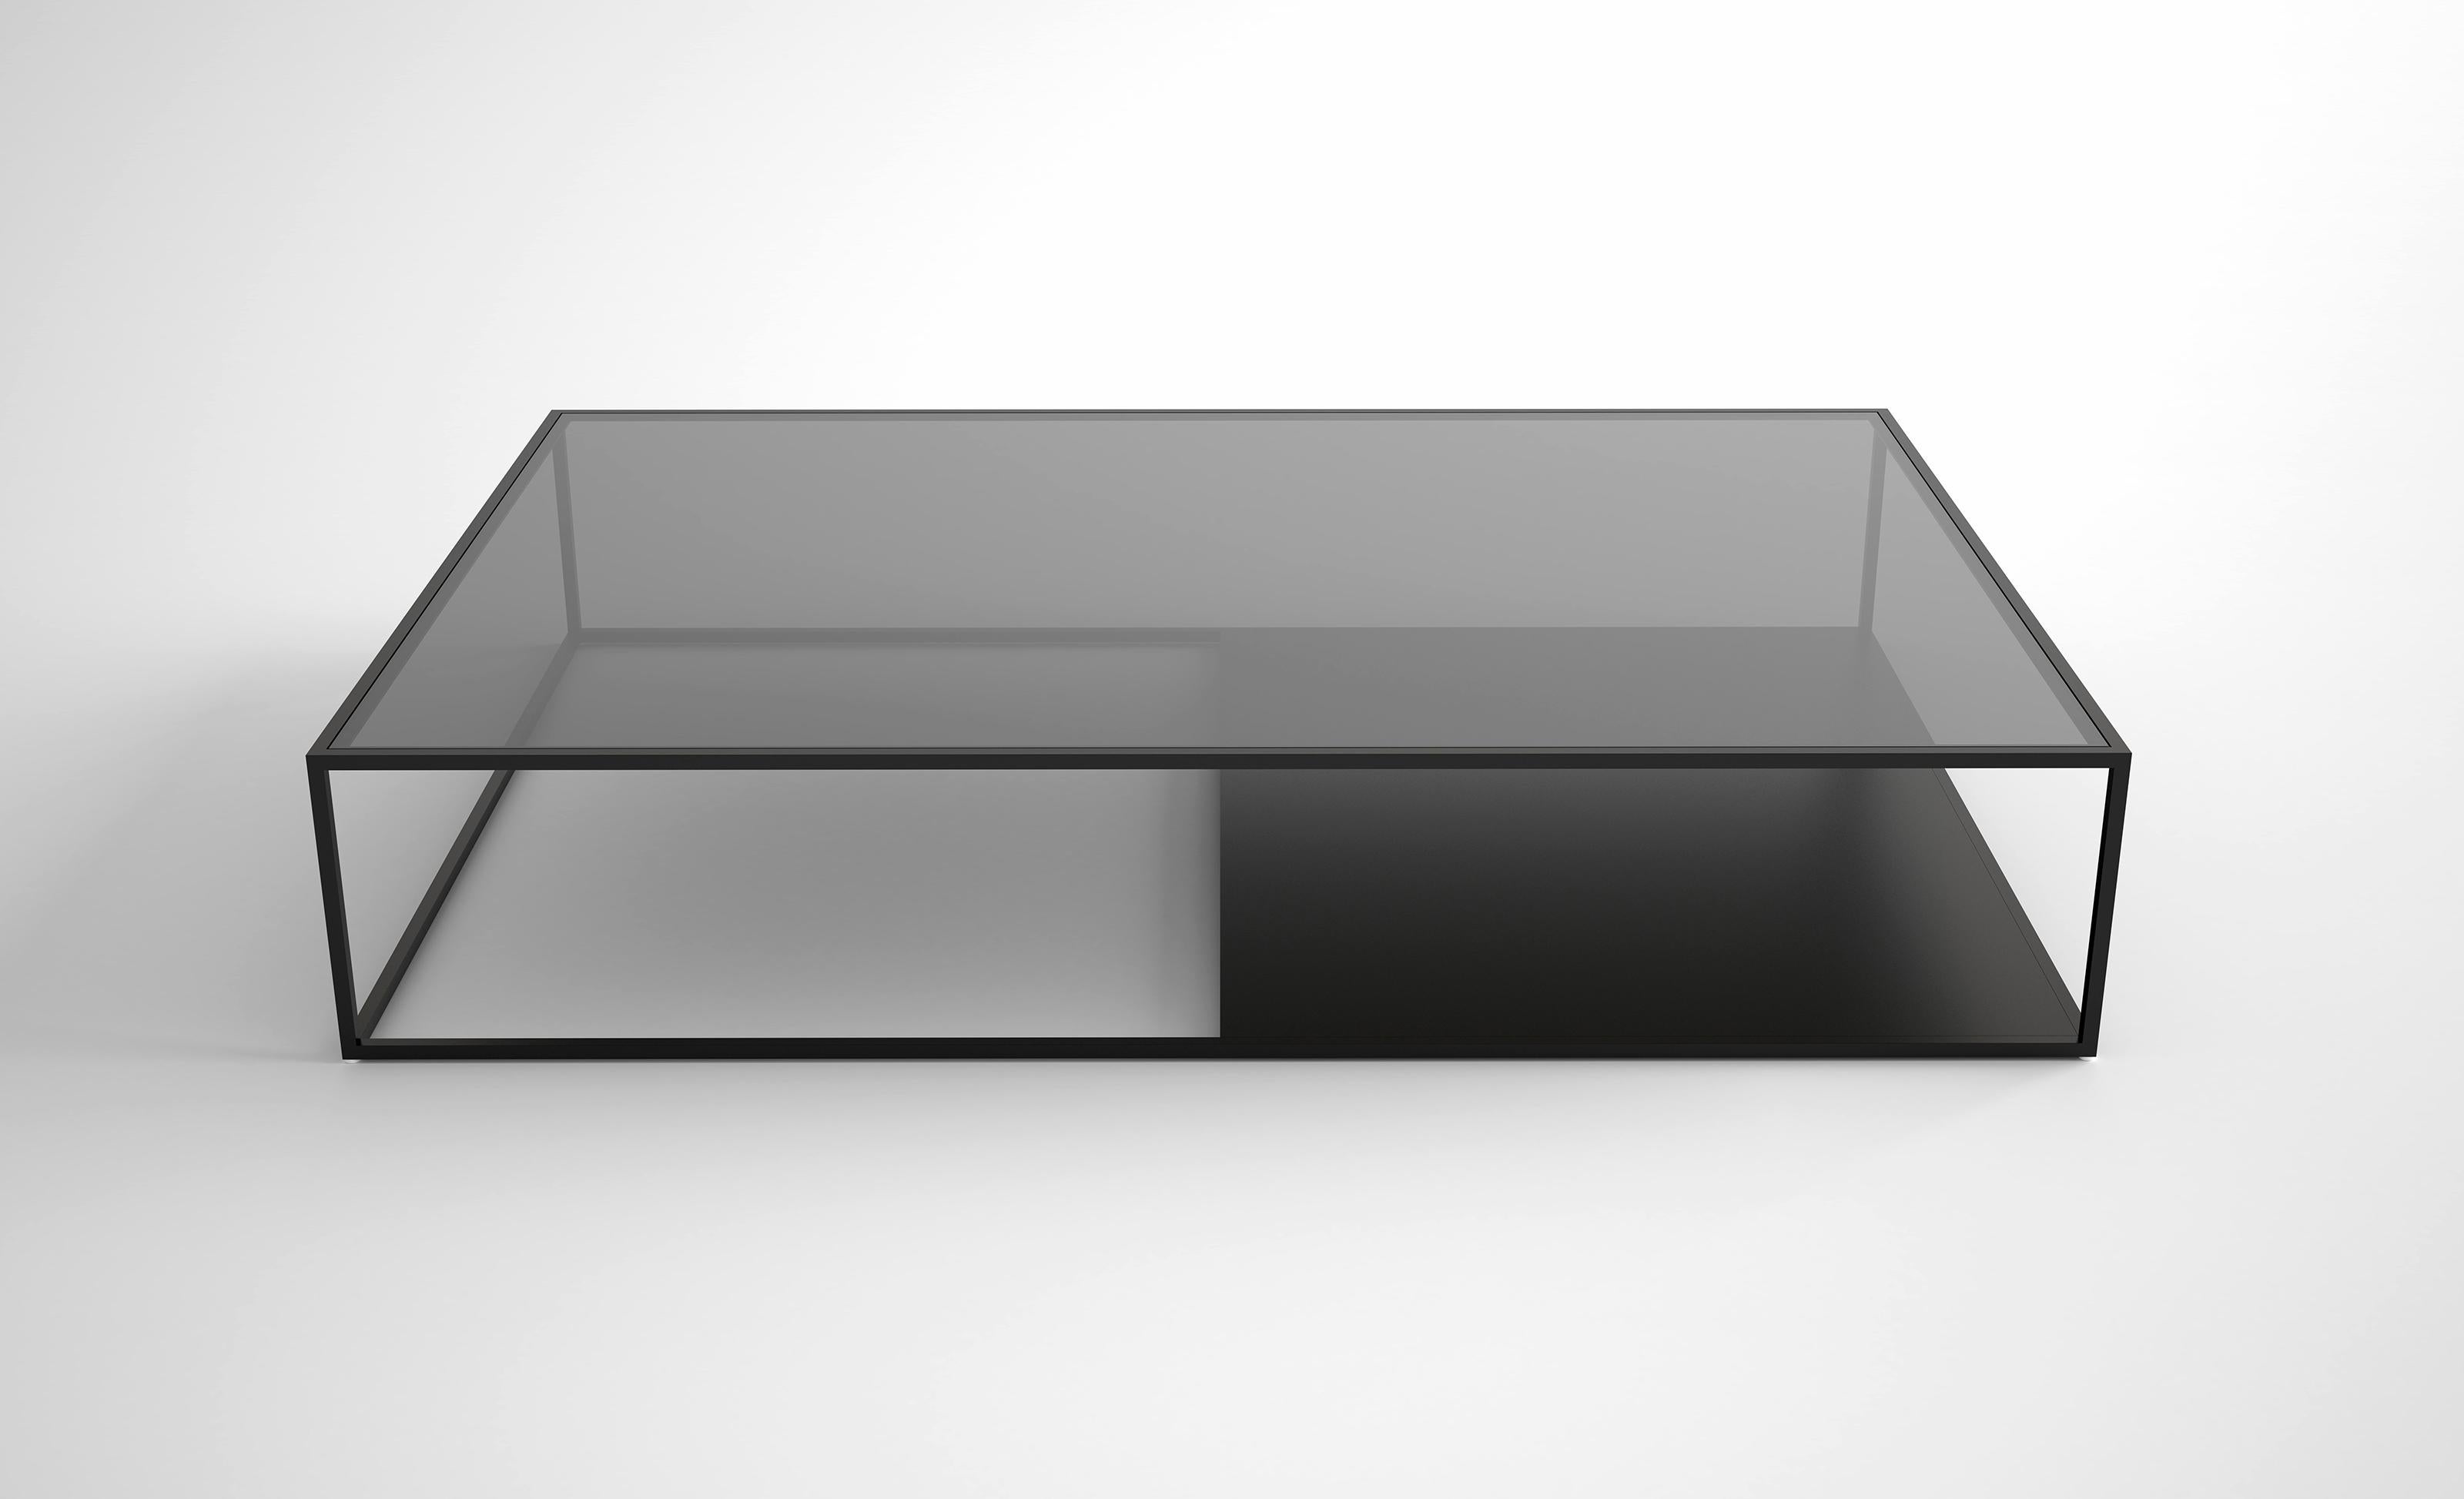 Table basse Half & Half Version A par Phase Design
Dimensions : P 96,5 x L 142,2 x H 26,7 cm. 
Matériaux : Métal revêtu de poudre et verre. 

Barre carrée en acier peint par poudrage, disponible avec un plateau en verre étoilé ou gris. Les finitions